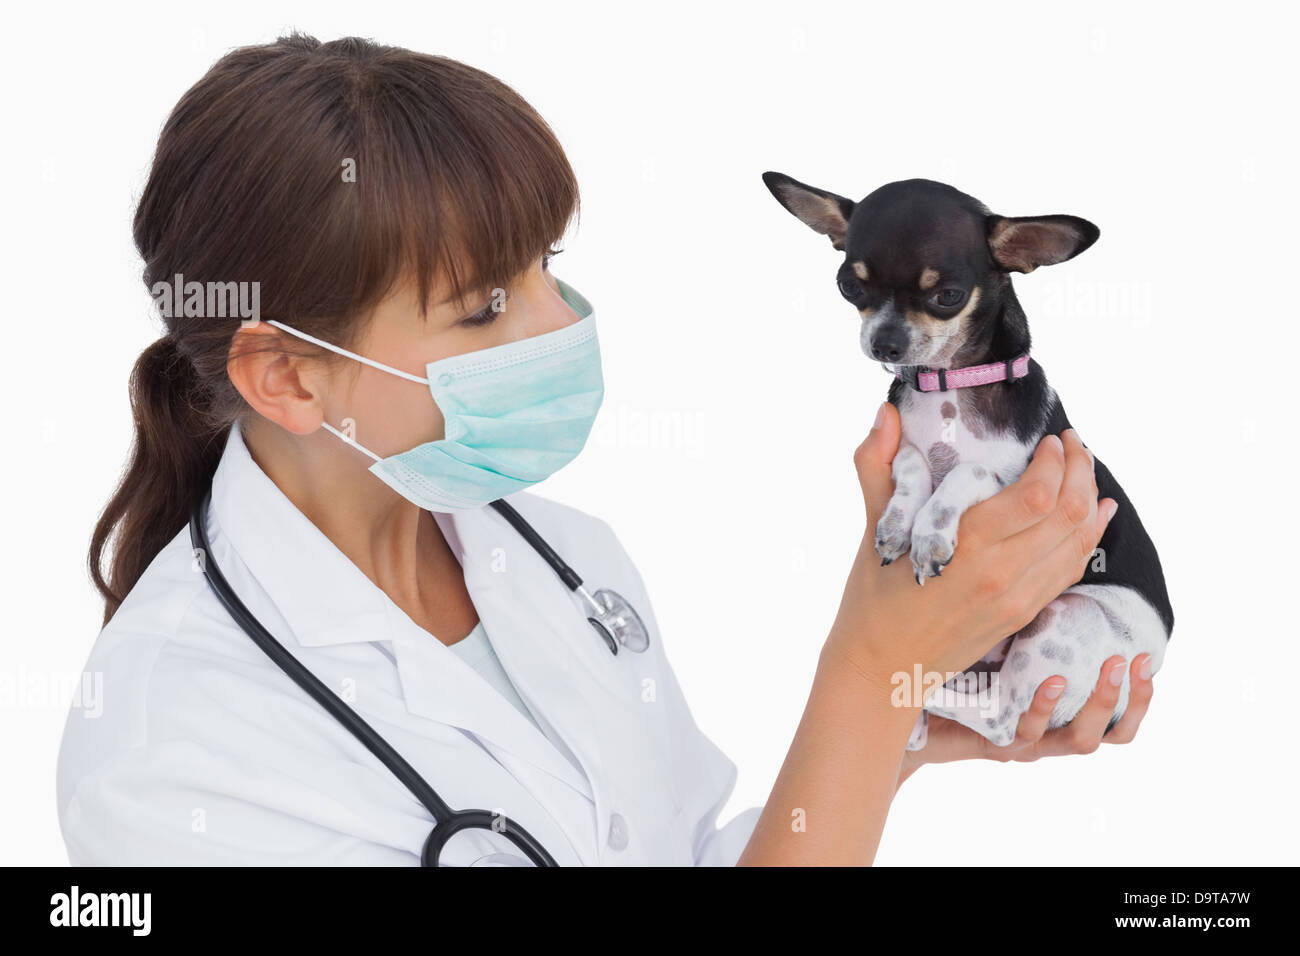 Vétérinaire avec masque de protection tenant un chihuahua Banque D'Images